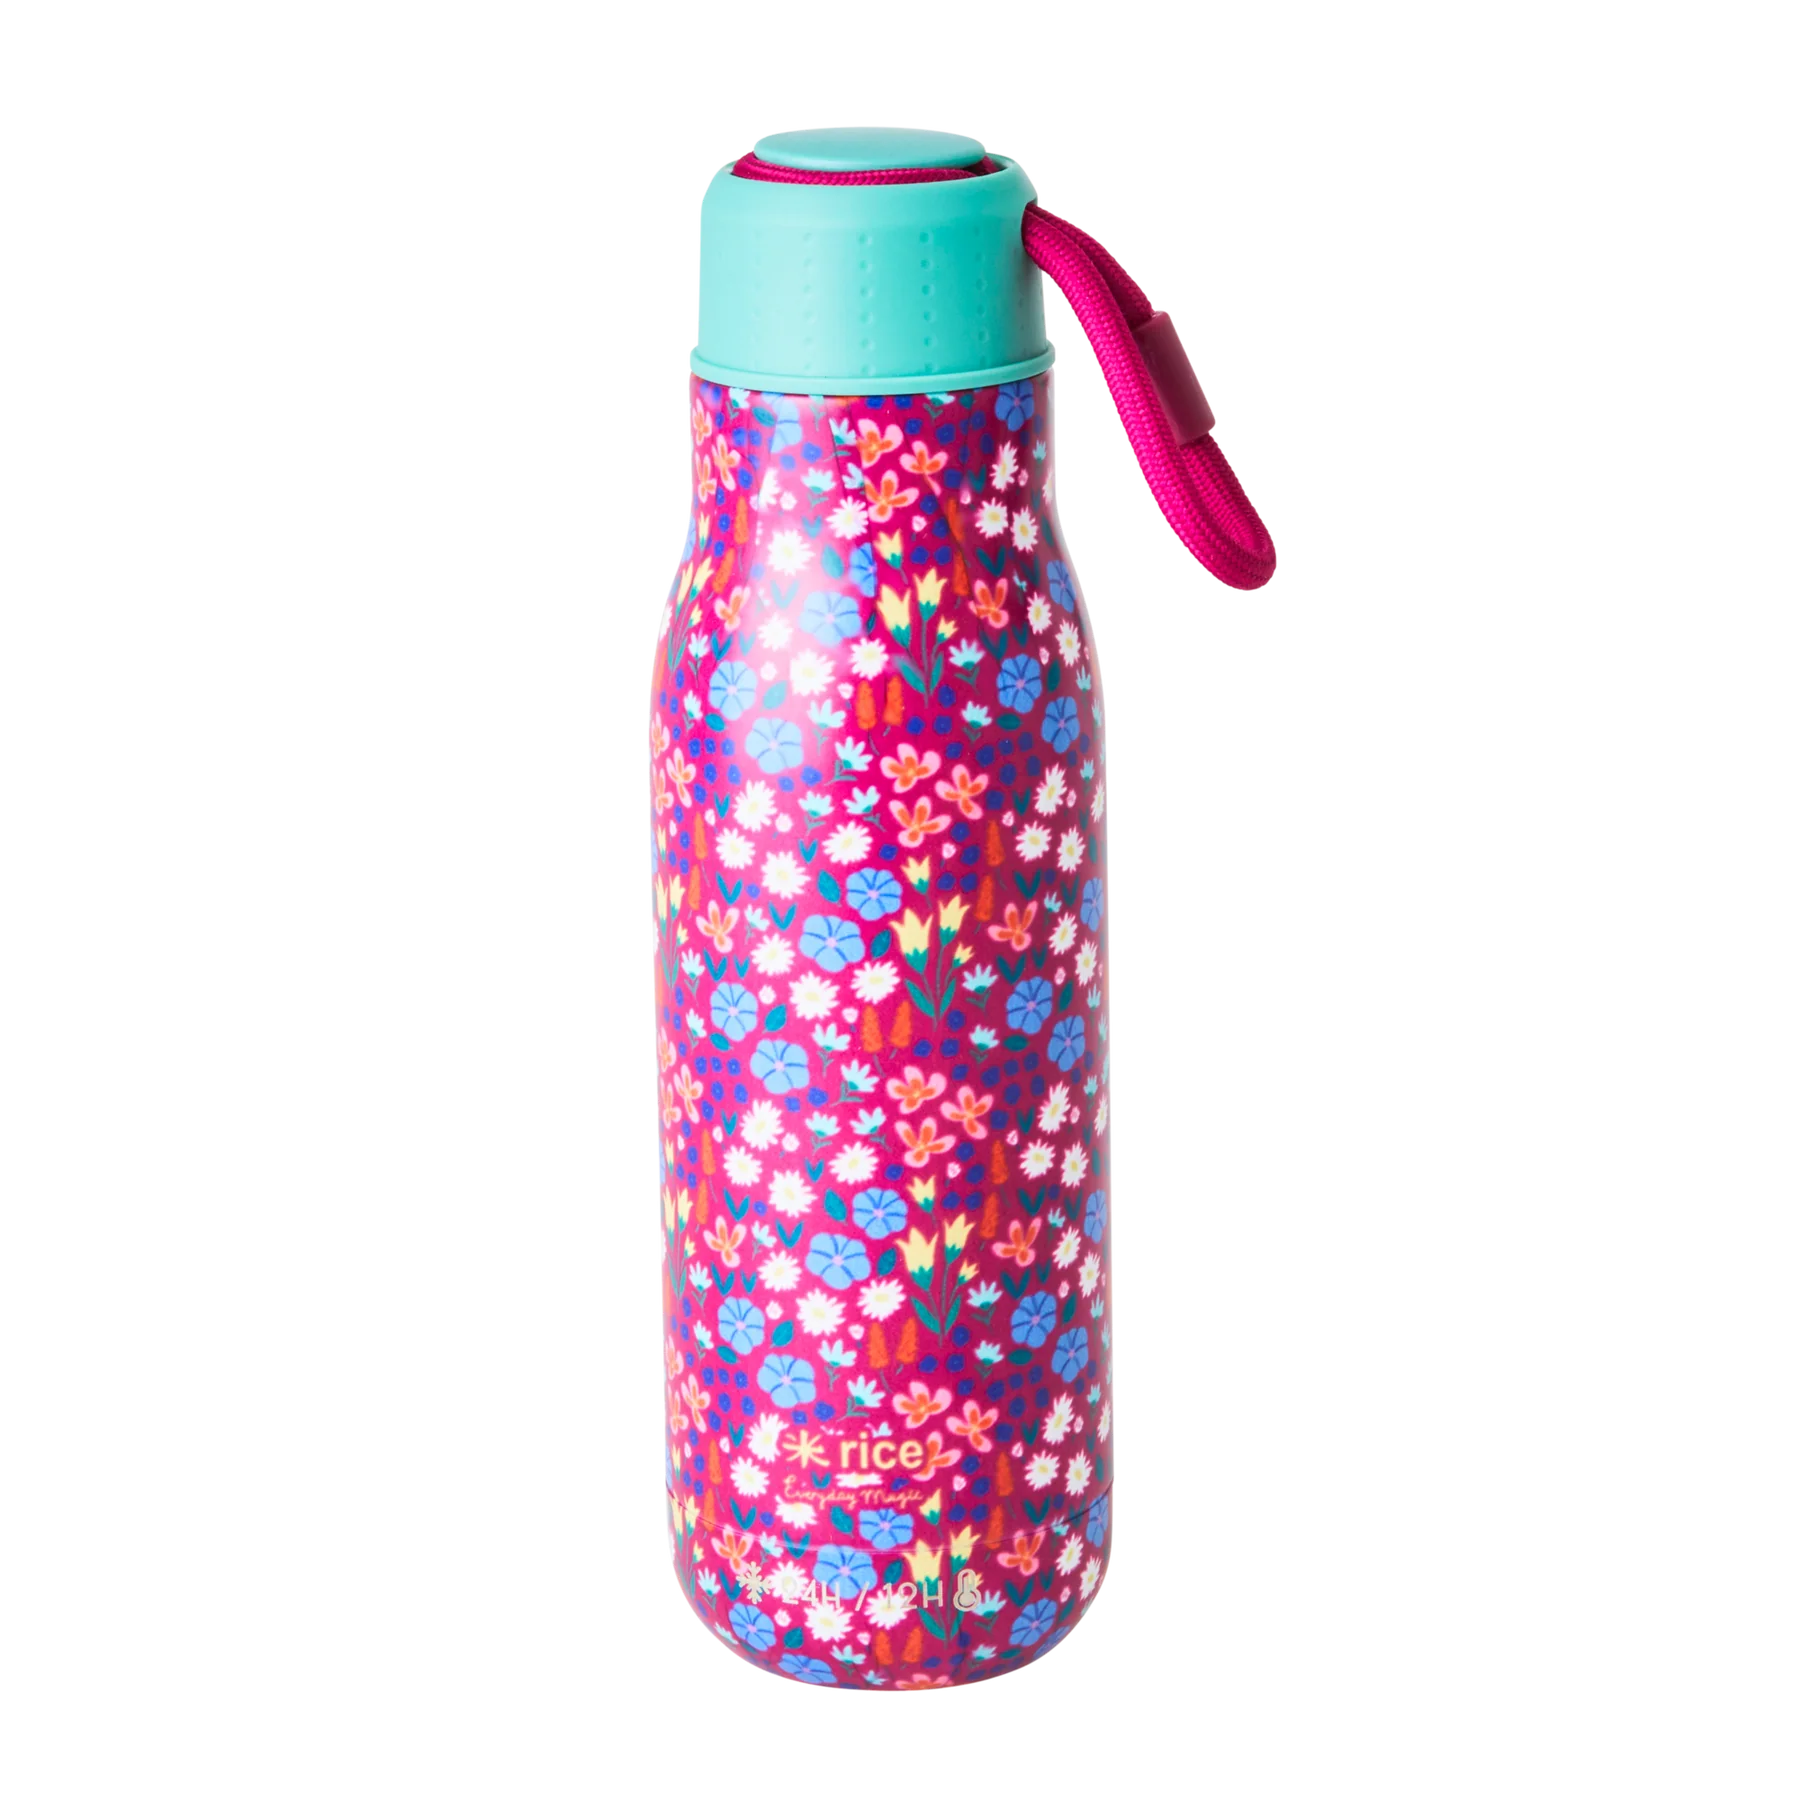 Edelstahl-Trinkflasche mit Mohnblumen-Aufdruck – 12 Stunden heiß/24 Stunden kalt – 500 ml